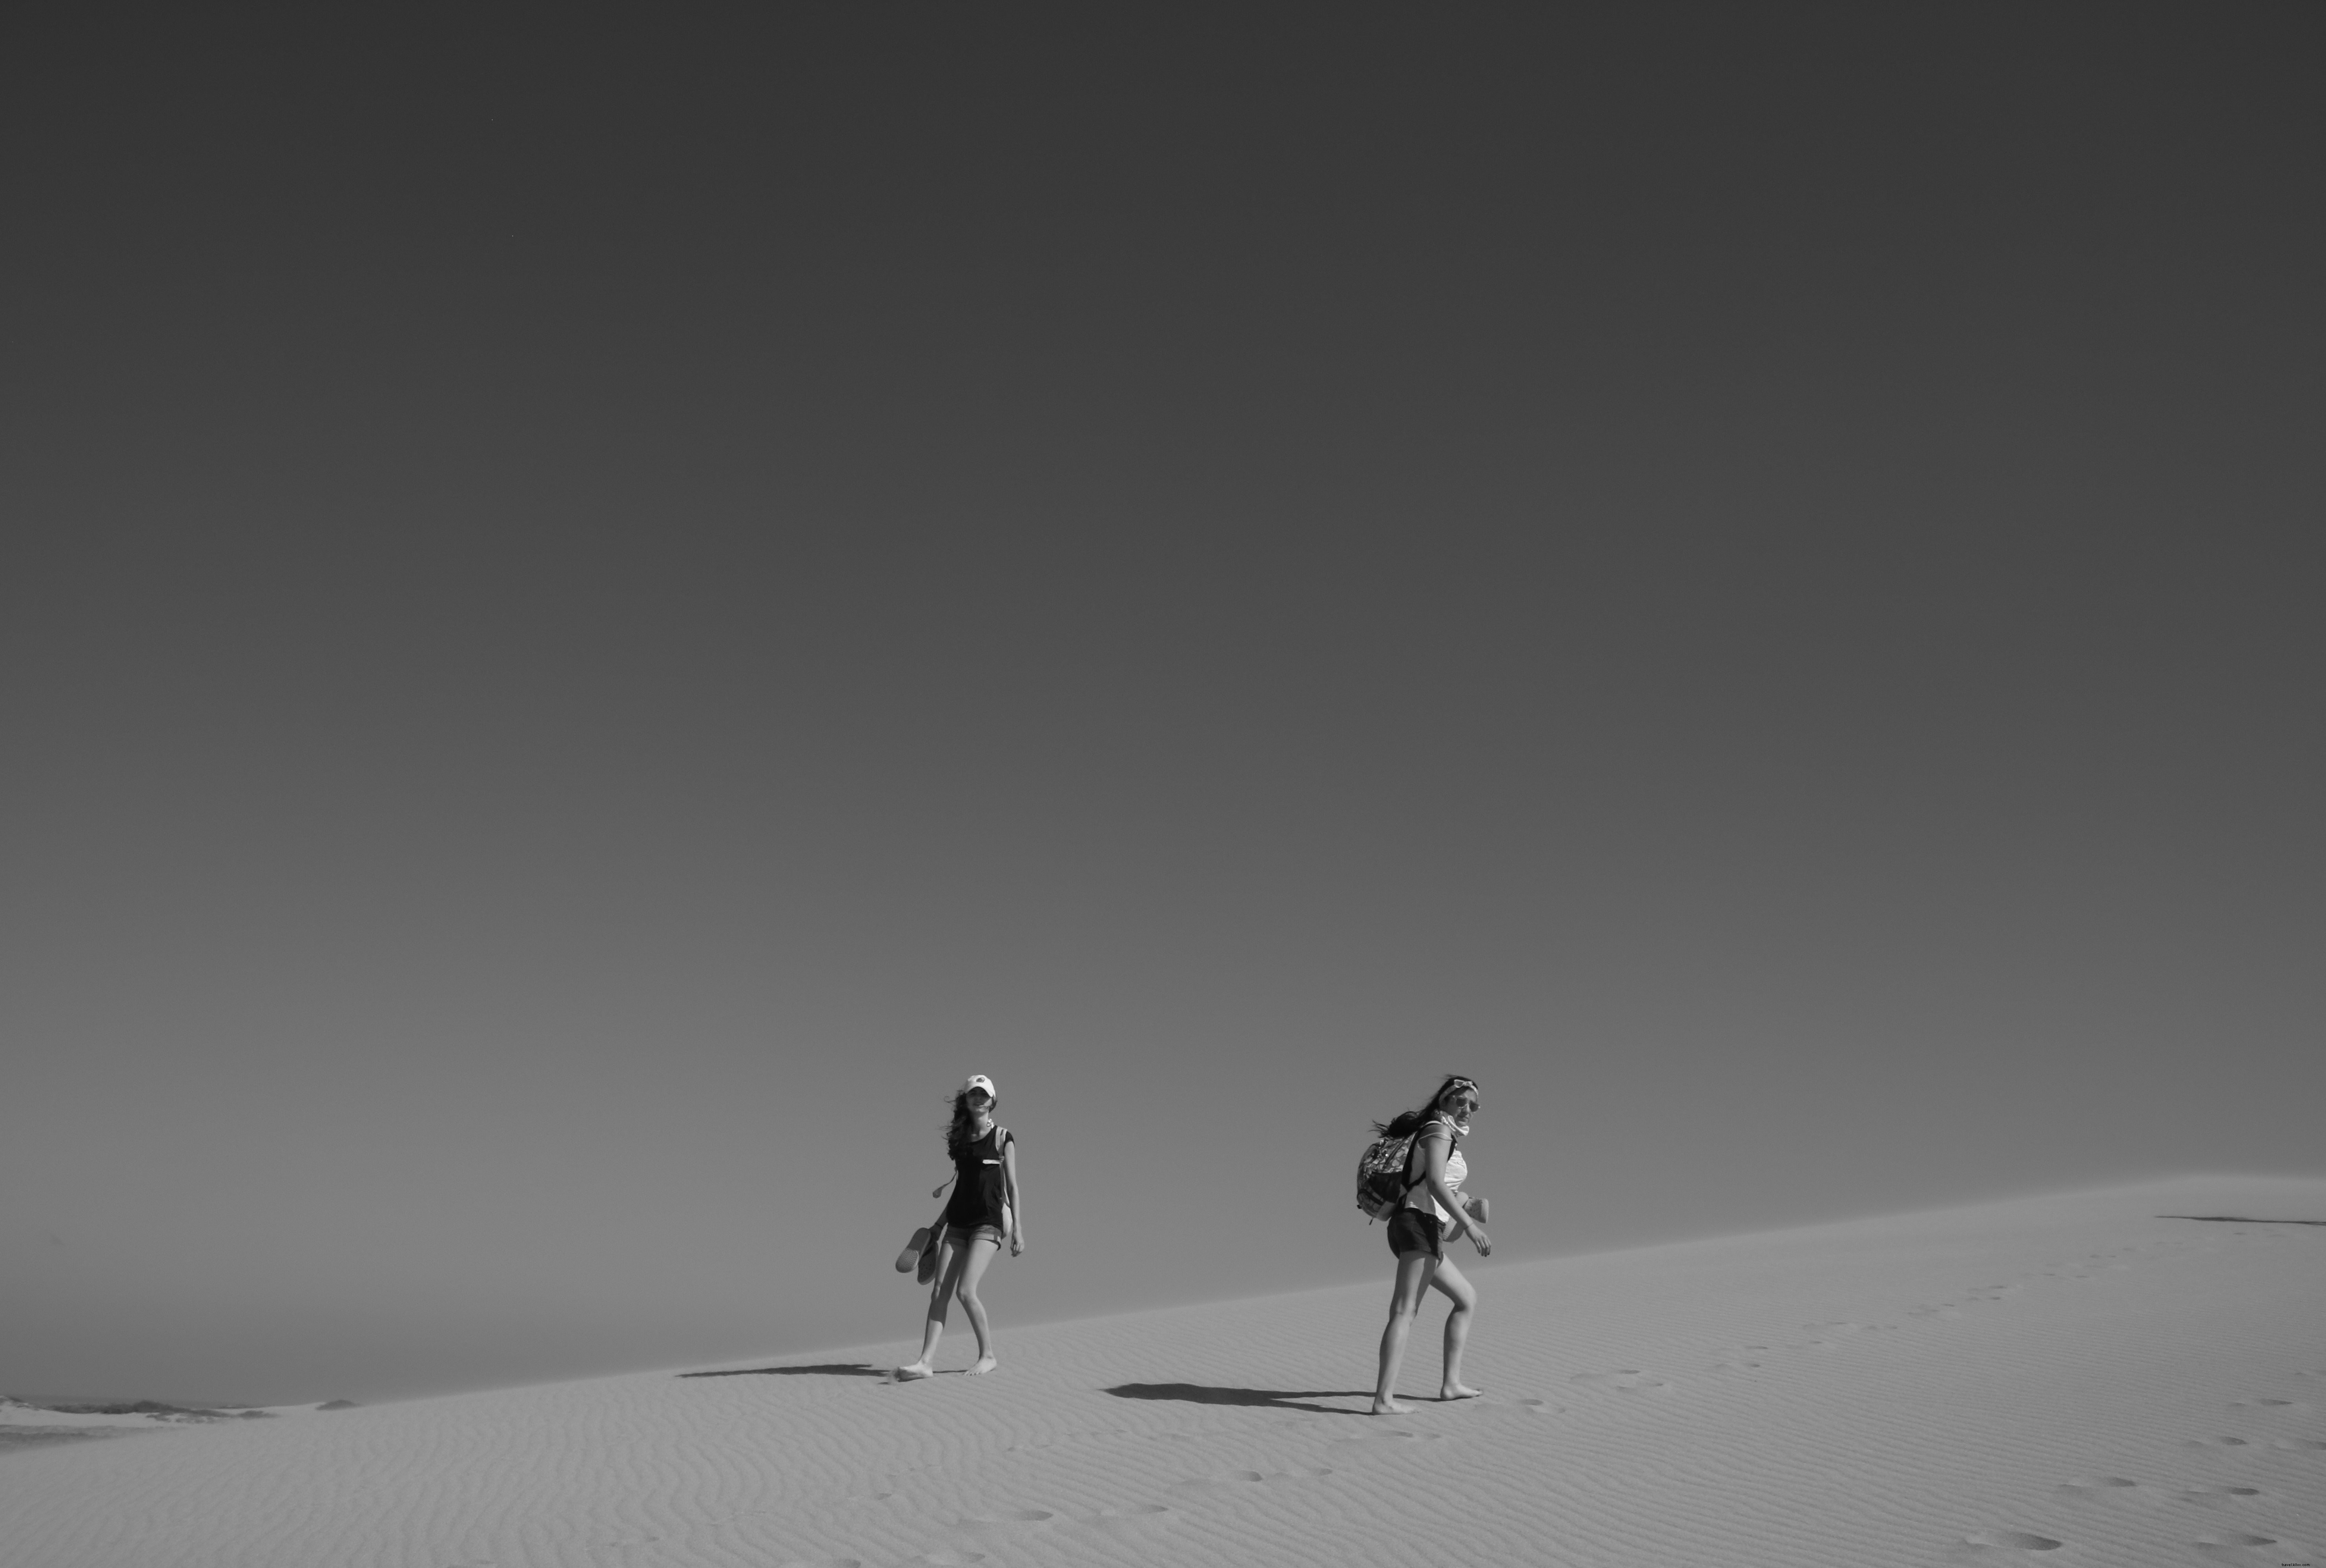 Persone che camminano nel deserto in foto in bianco e nero 